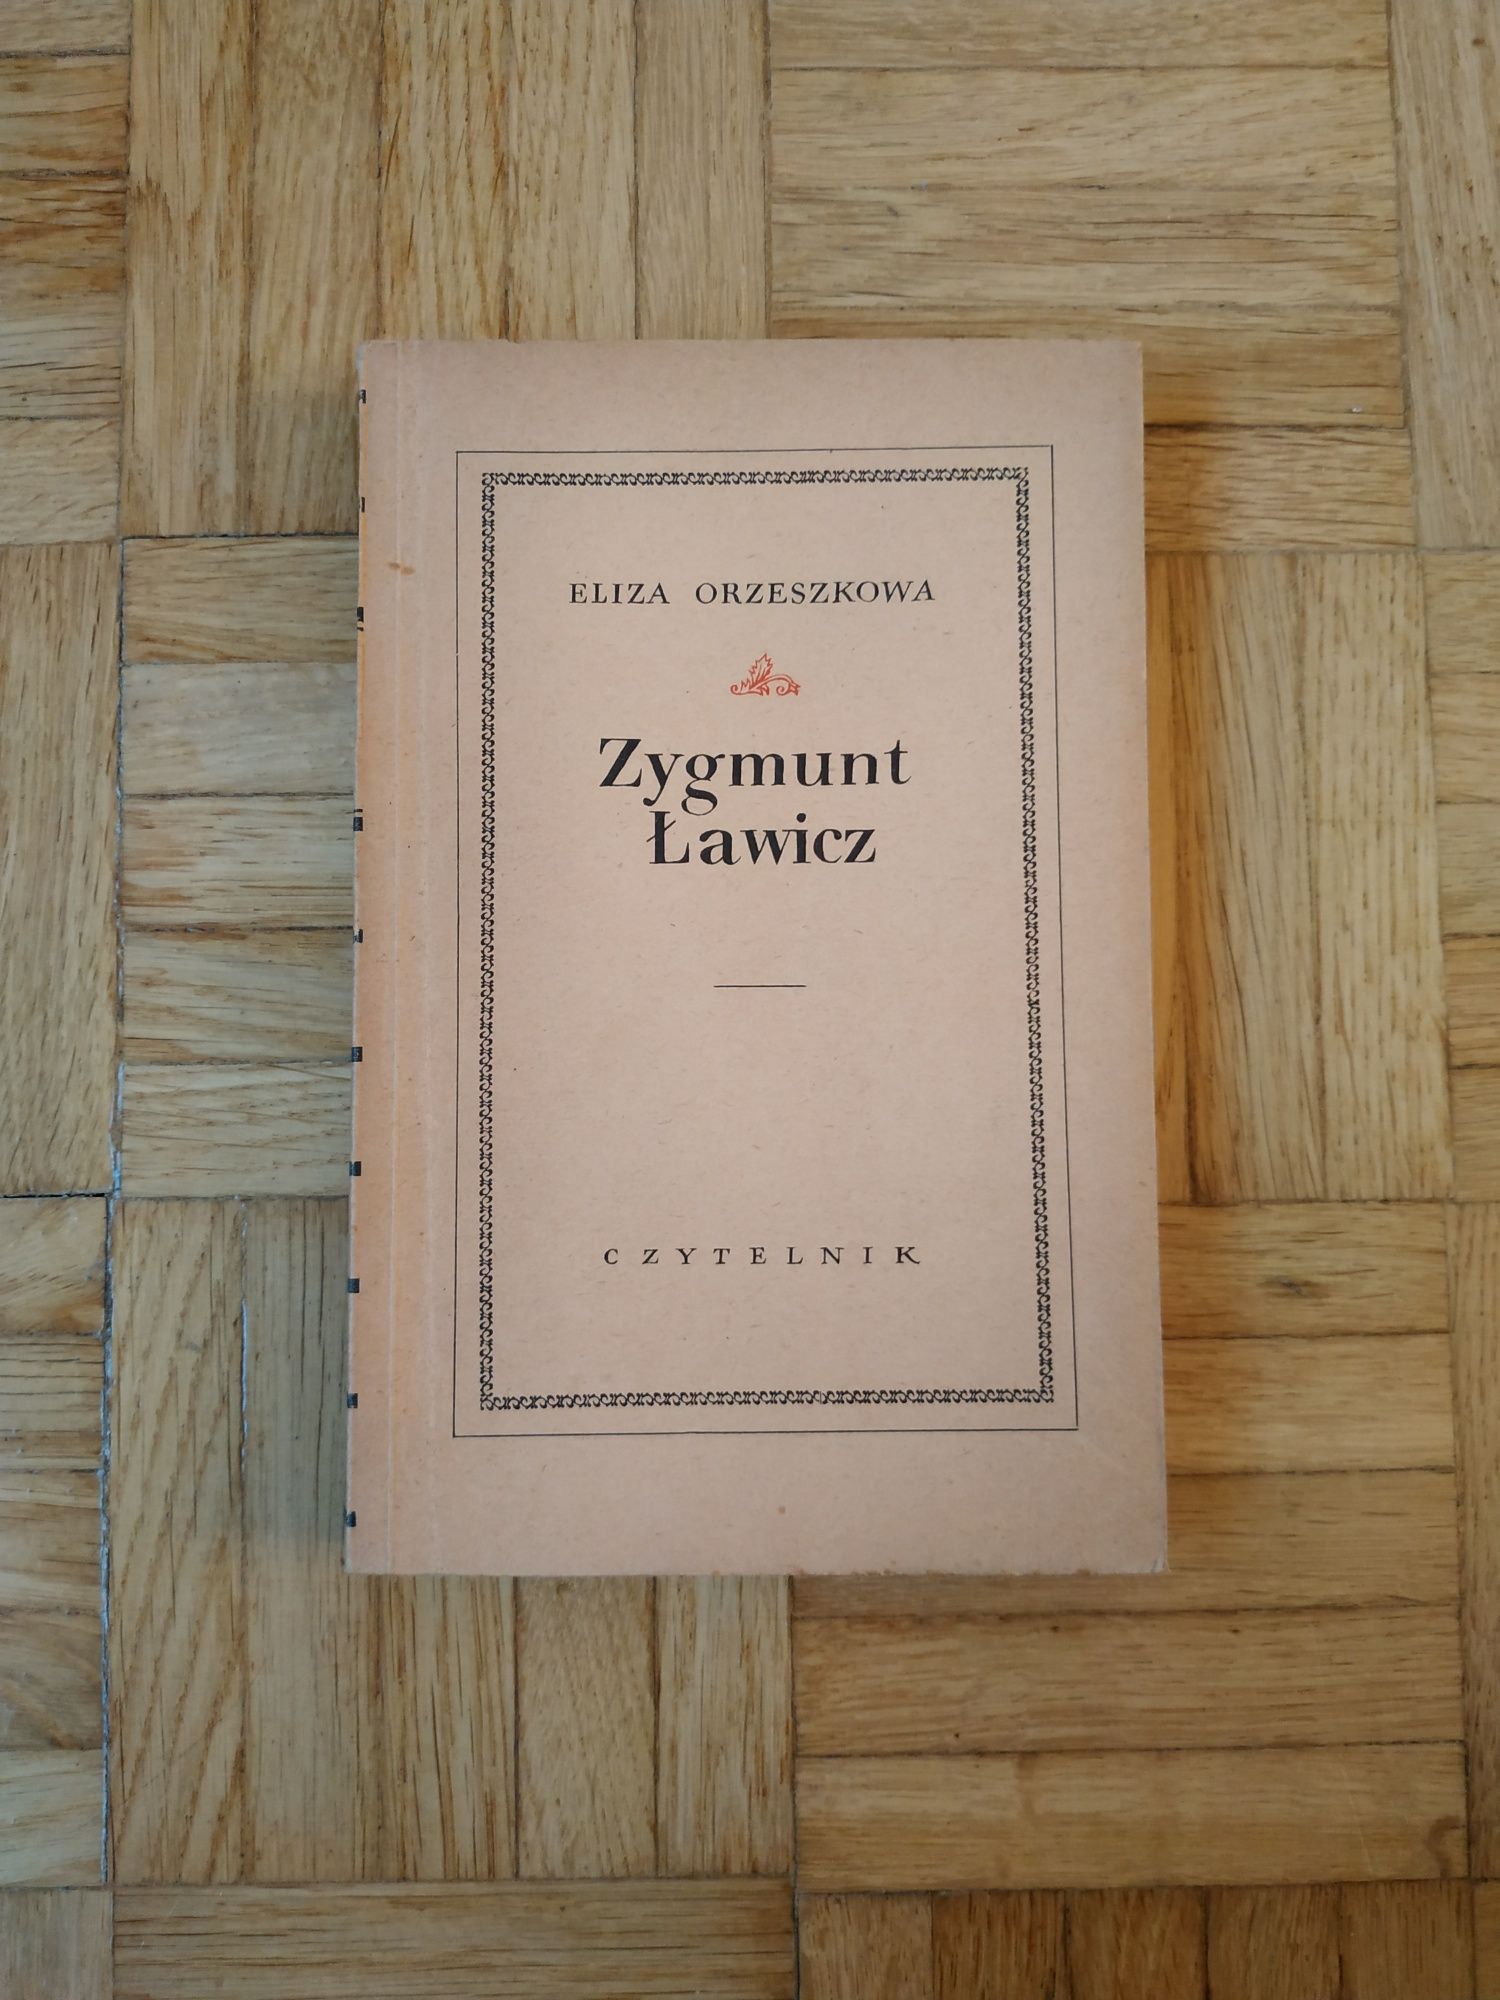 Książki Orzeszkowa - Zygmunt Ławicz, Meir Ezofowicz